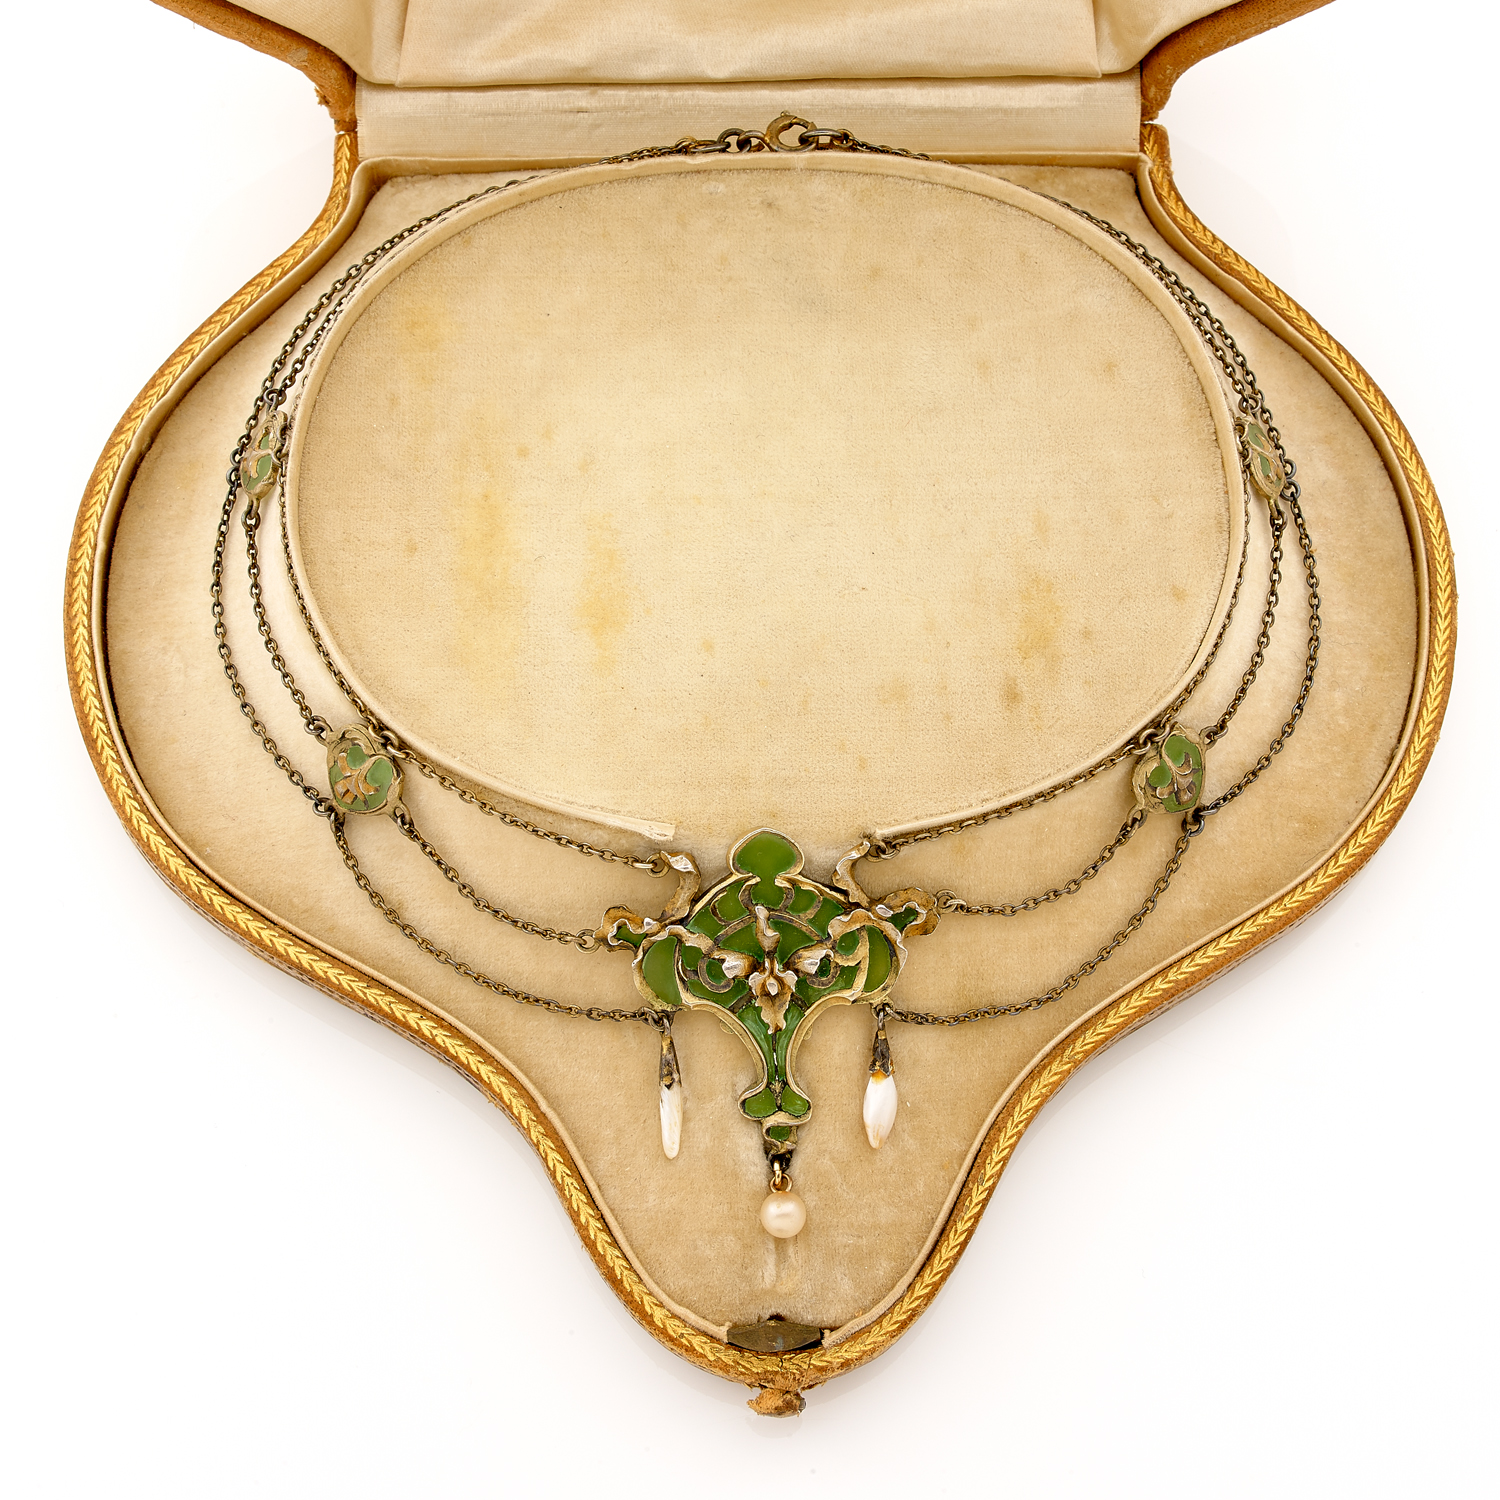 Collier en or, argent, pâte de verre et perles fines à décor ajouré de fleurs et feuillages